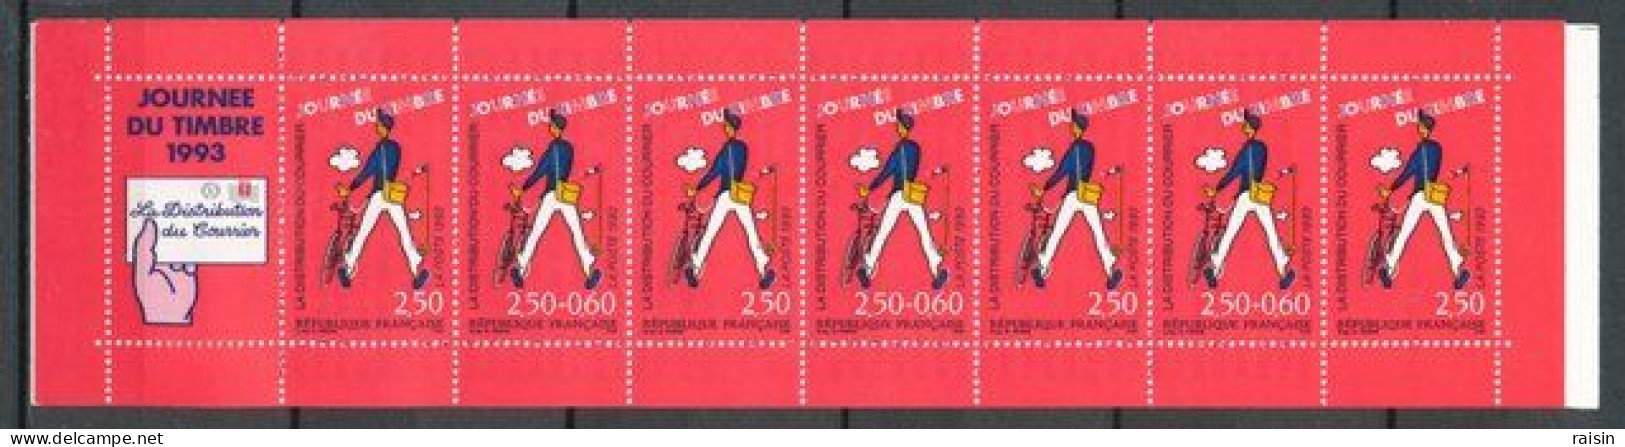 France 1993 Carnet Journé Du Timbre 1993 Neuf Non Plié - Tag Der Briefmarke